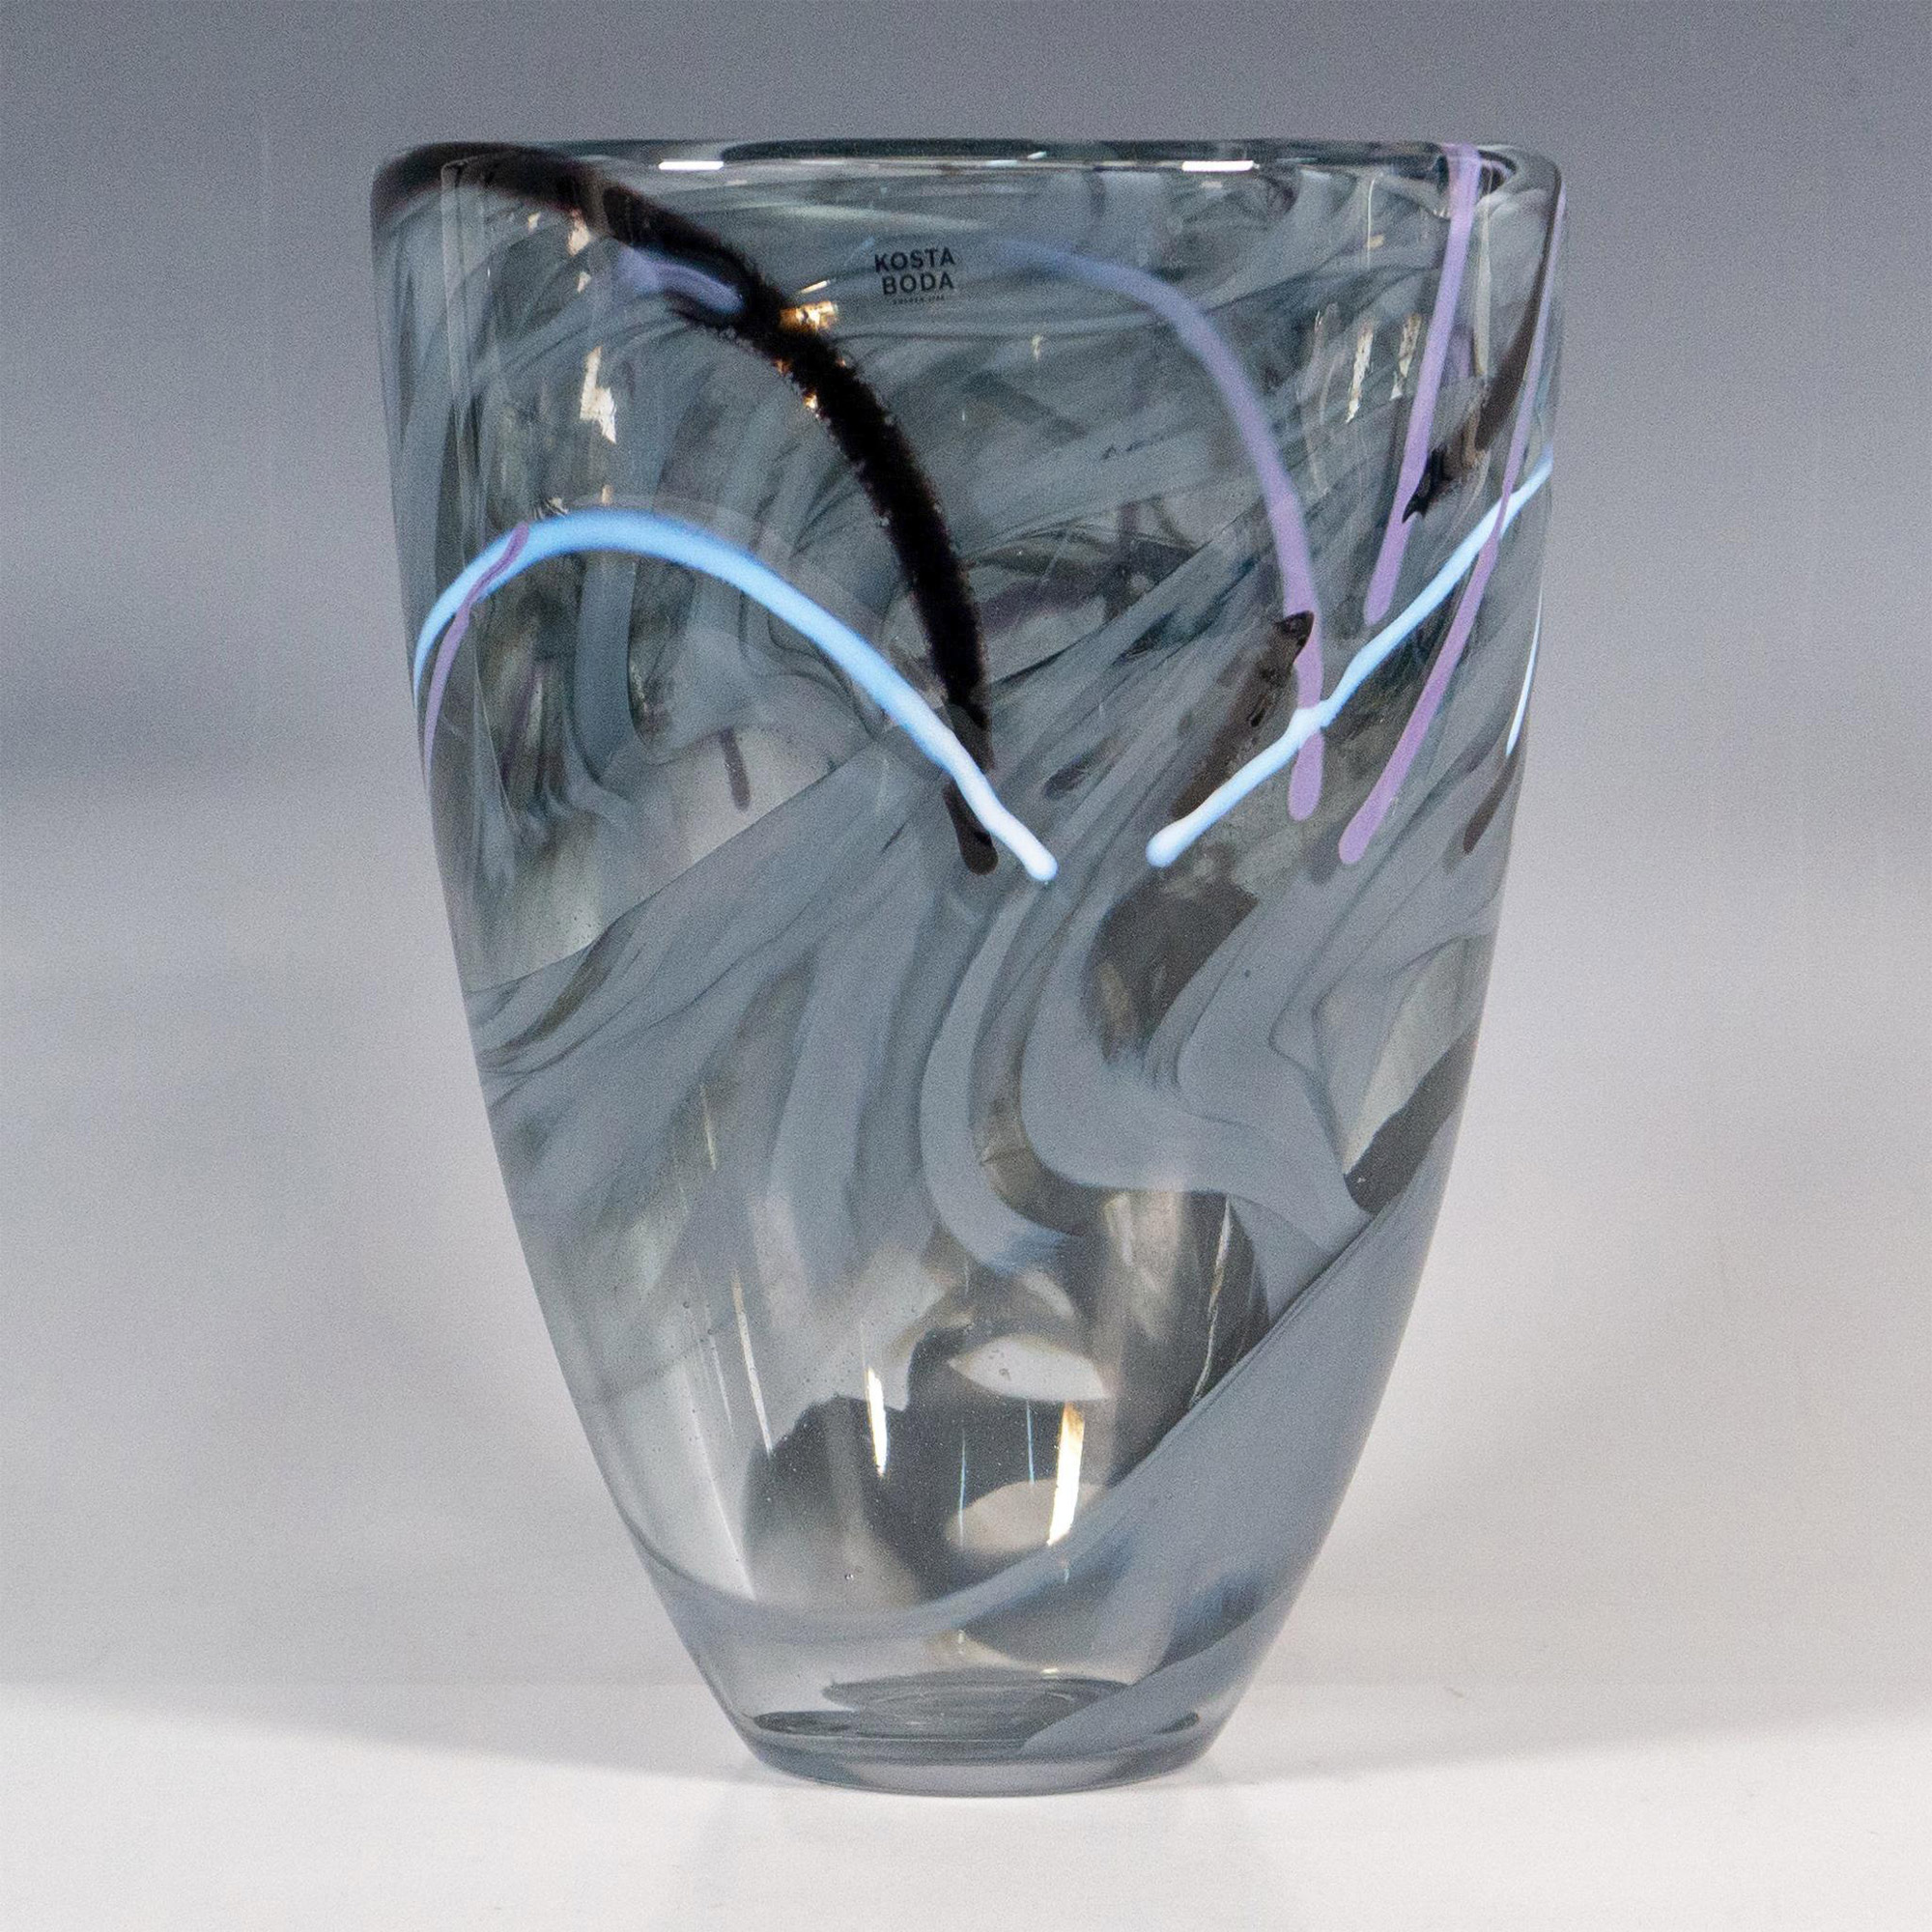 Kosta Boda by Anna Ehrner Glass Vase, Contrast - Image 3 of 5